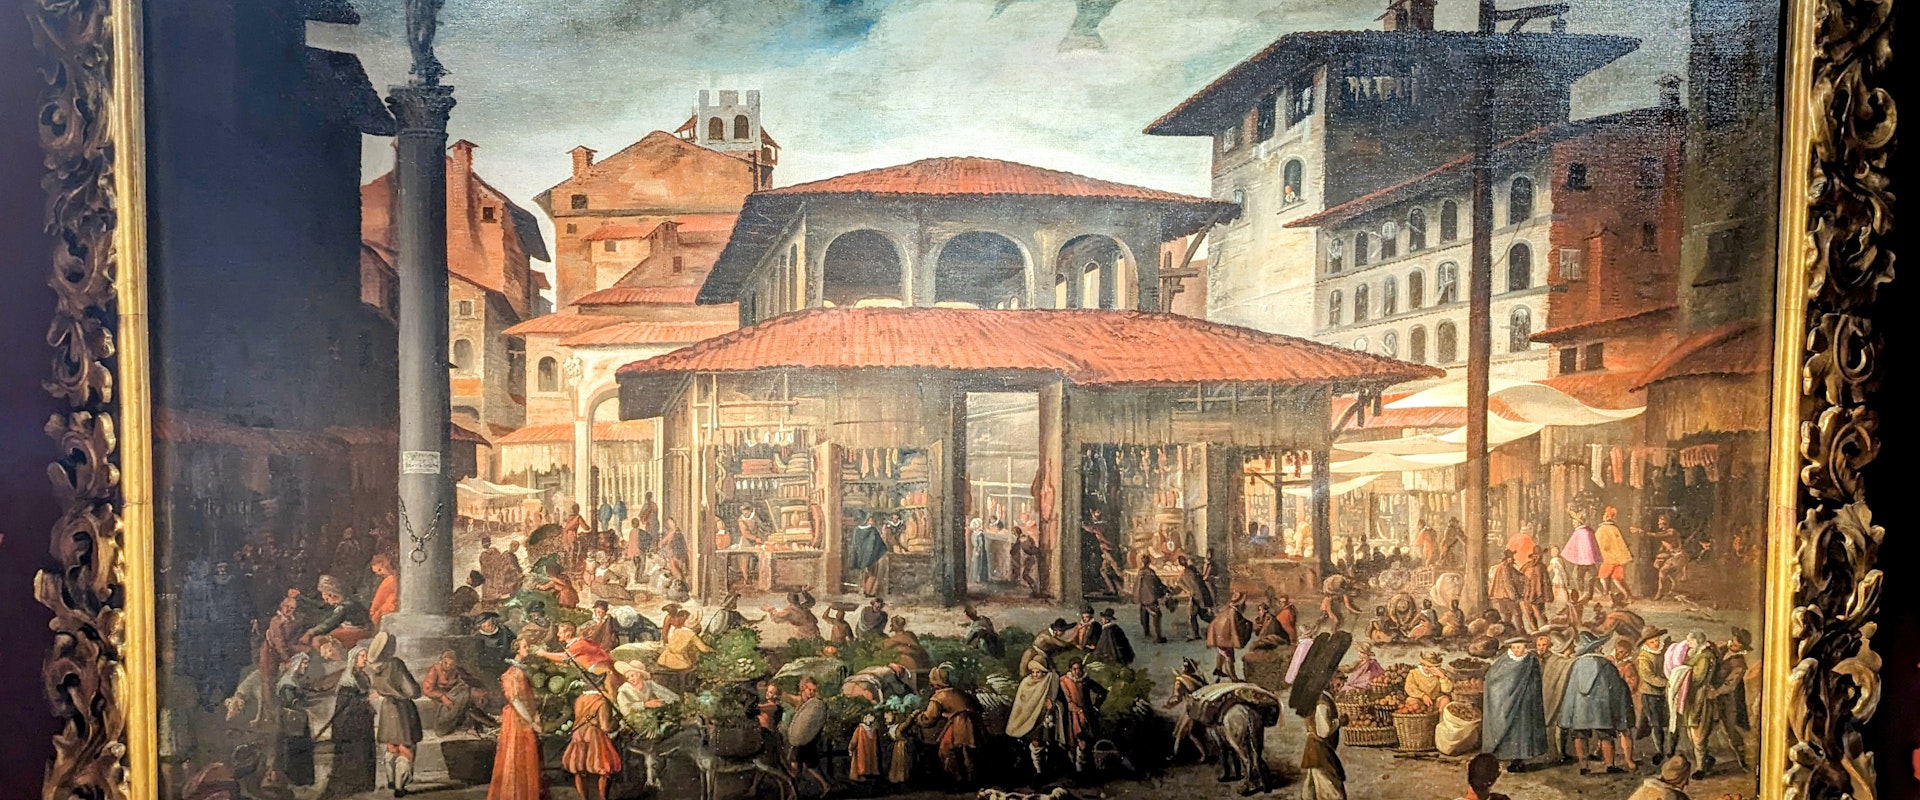 Gli ebrei, i Medici e il Ghetto di Firenze